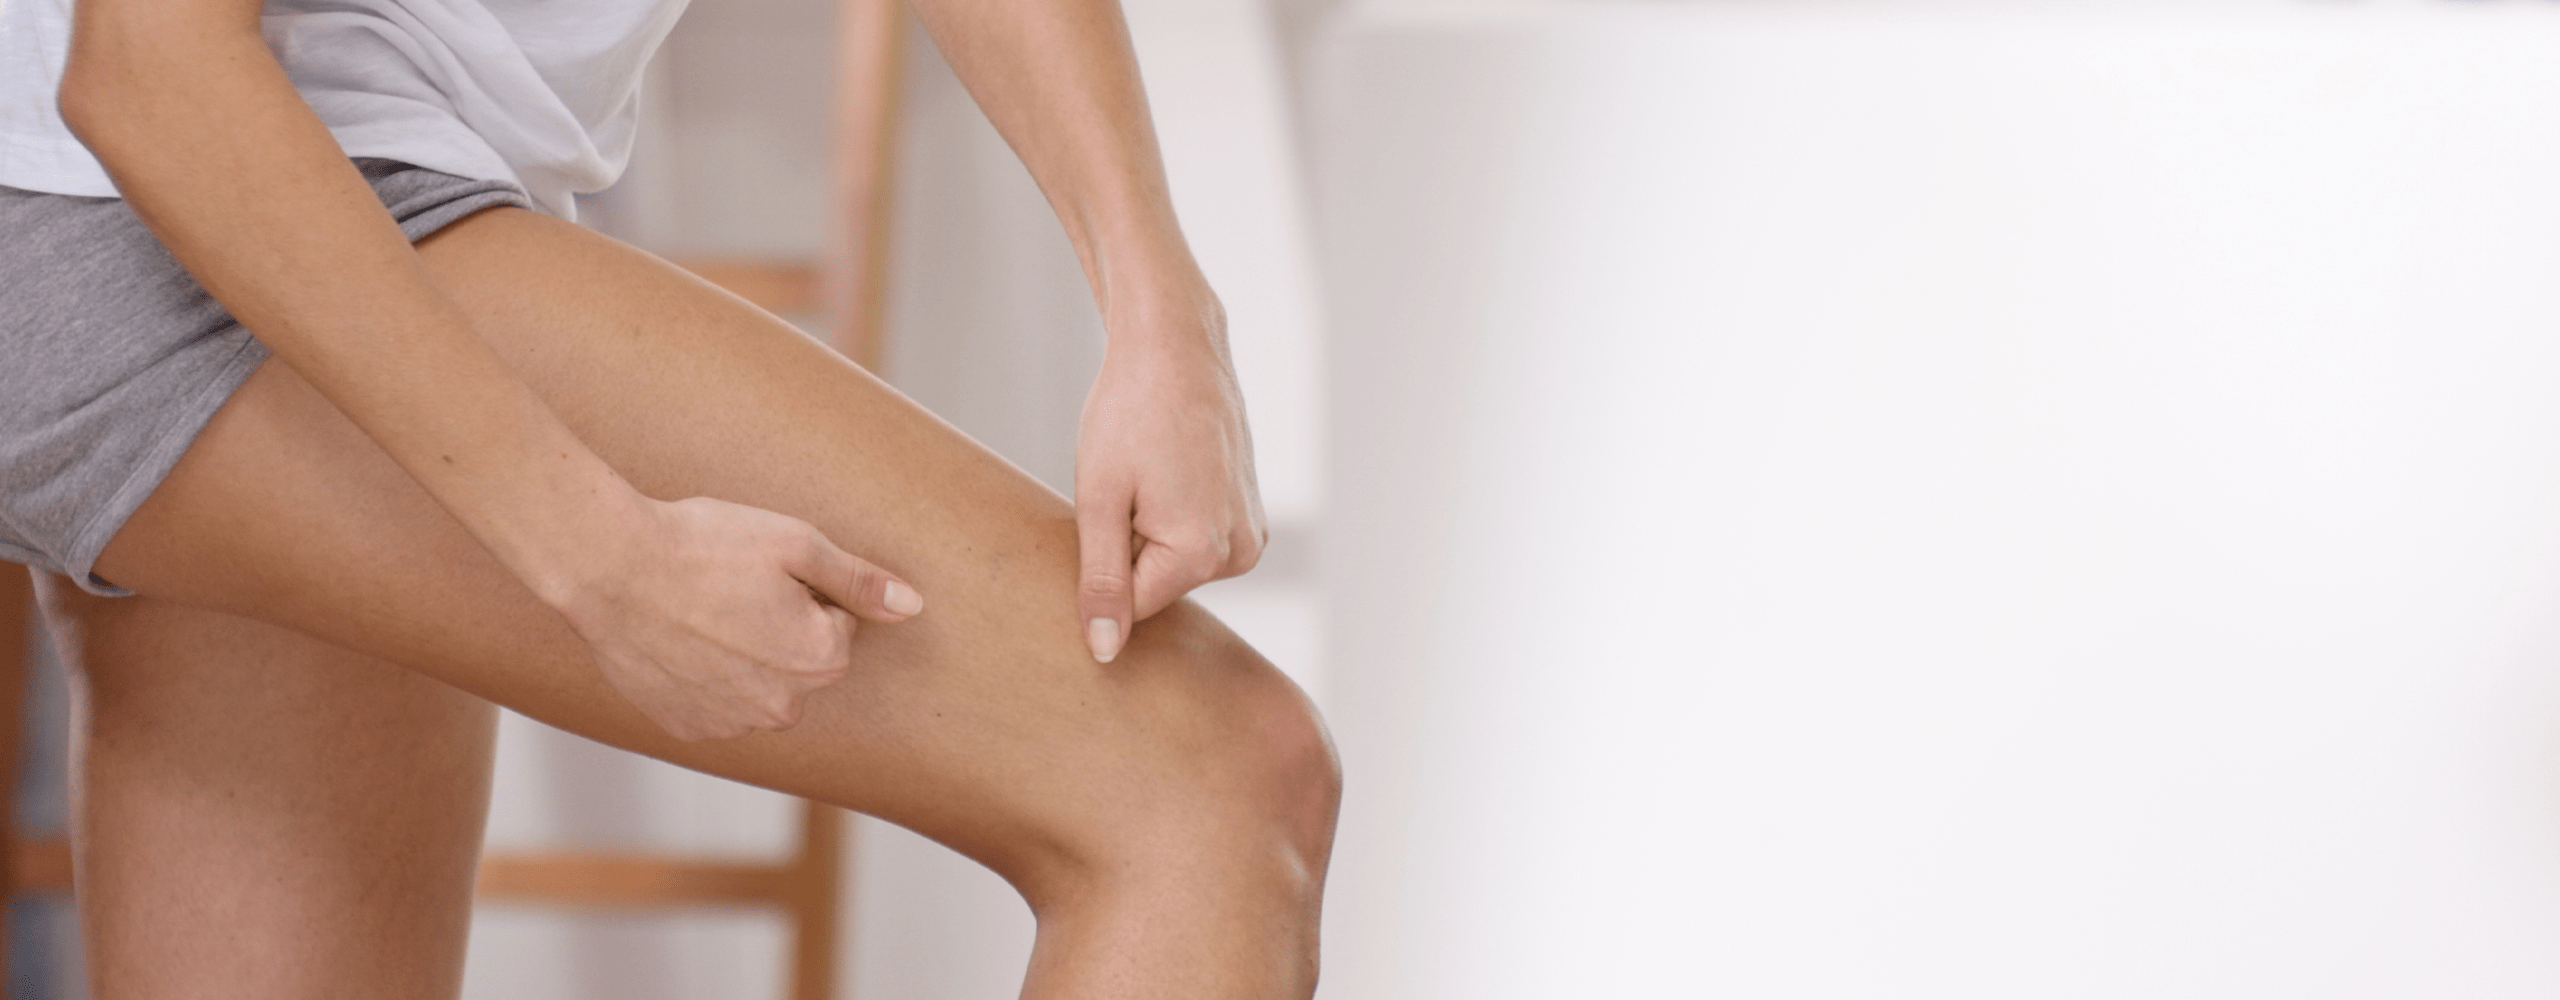 Massage anti-cellulite, comment procéder ?